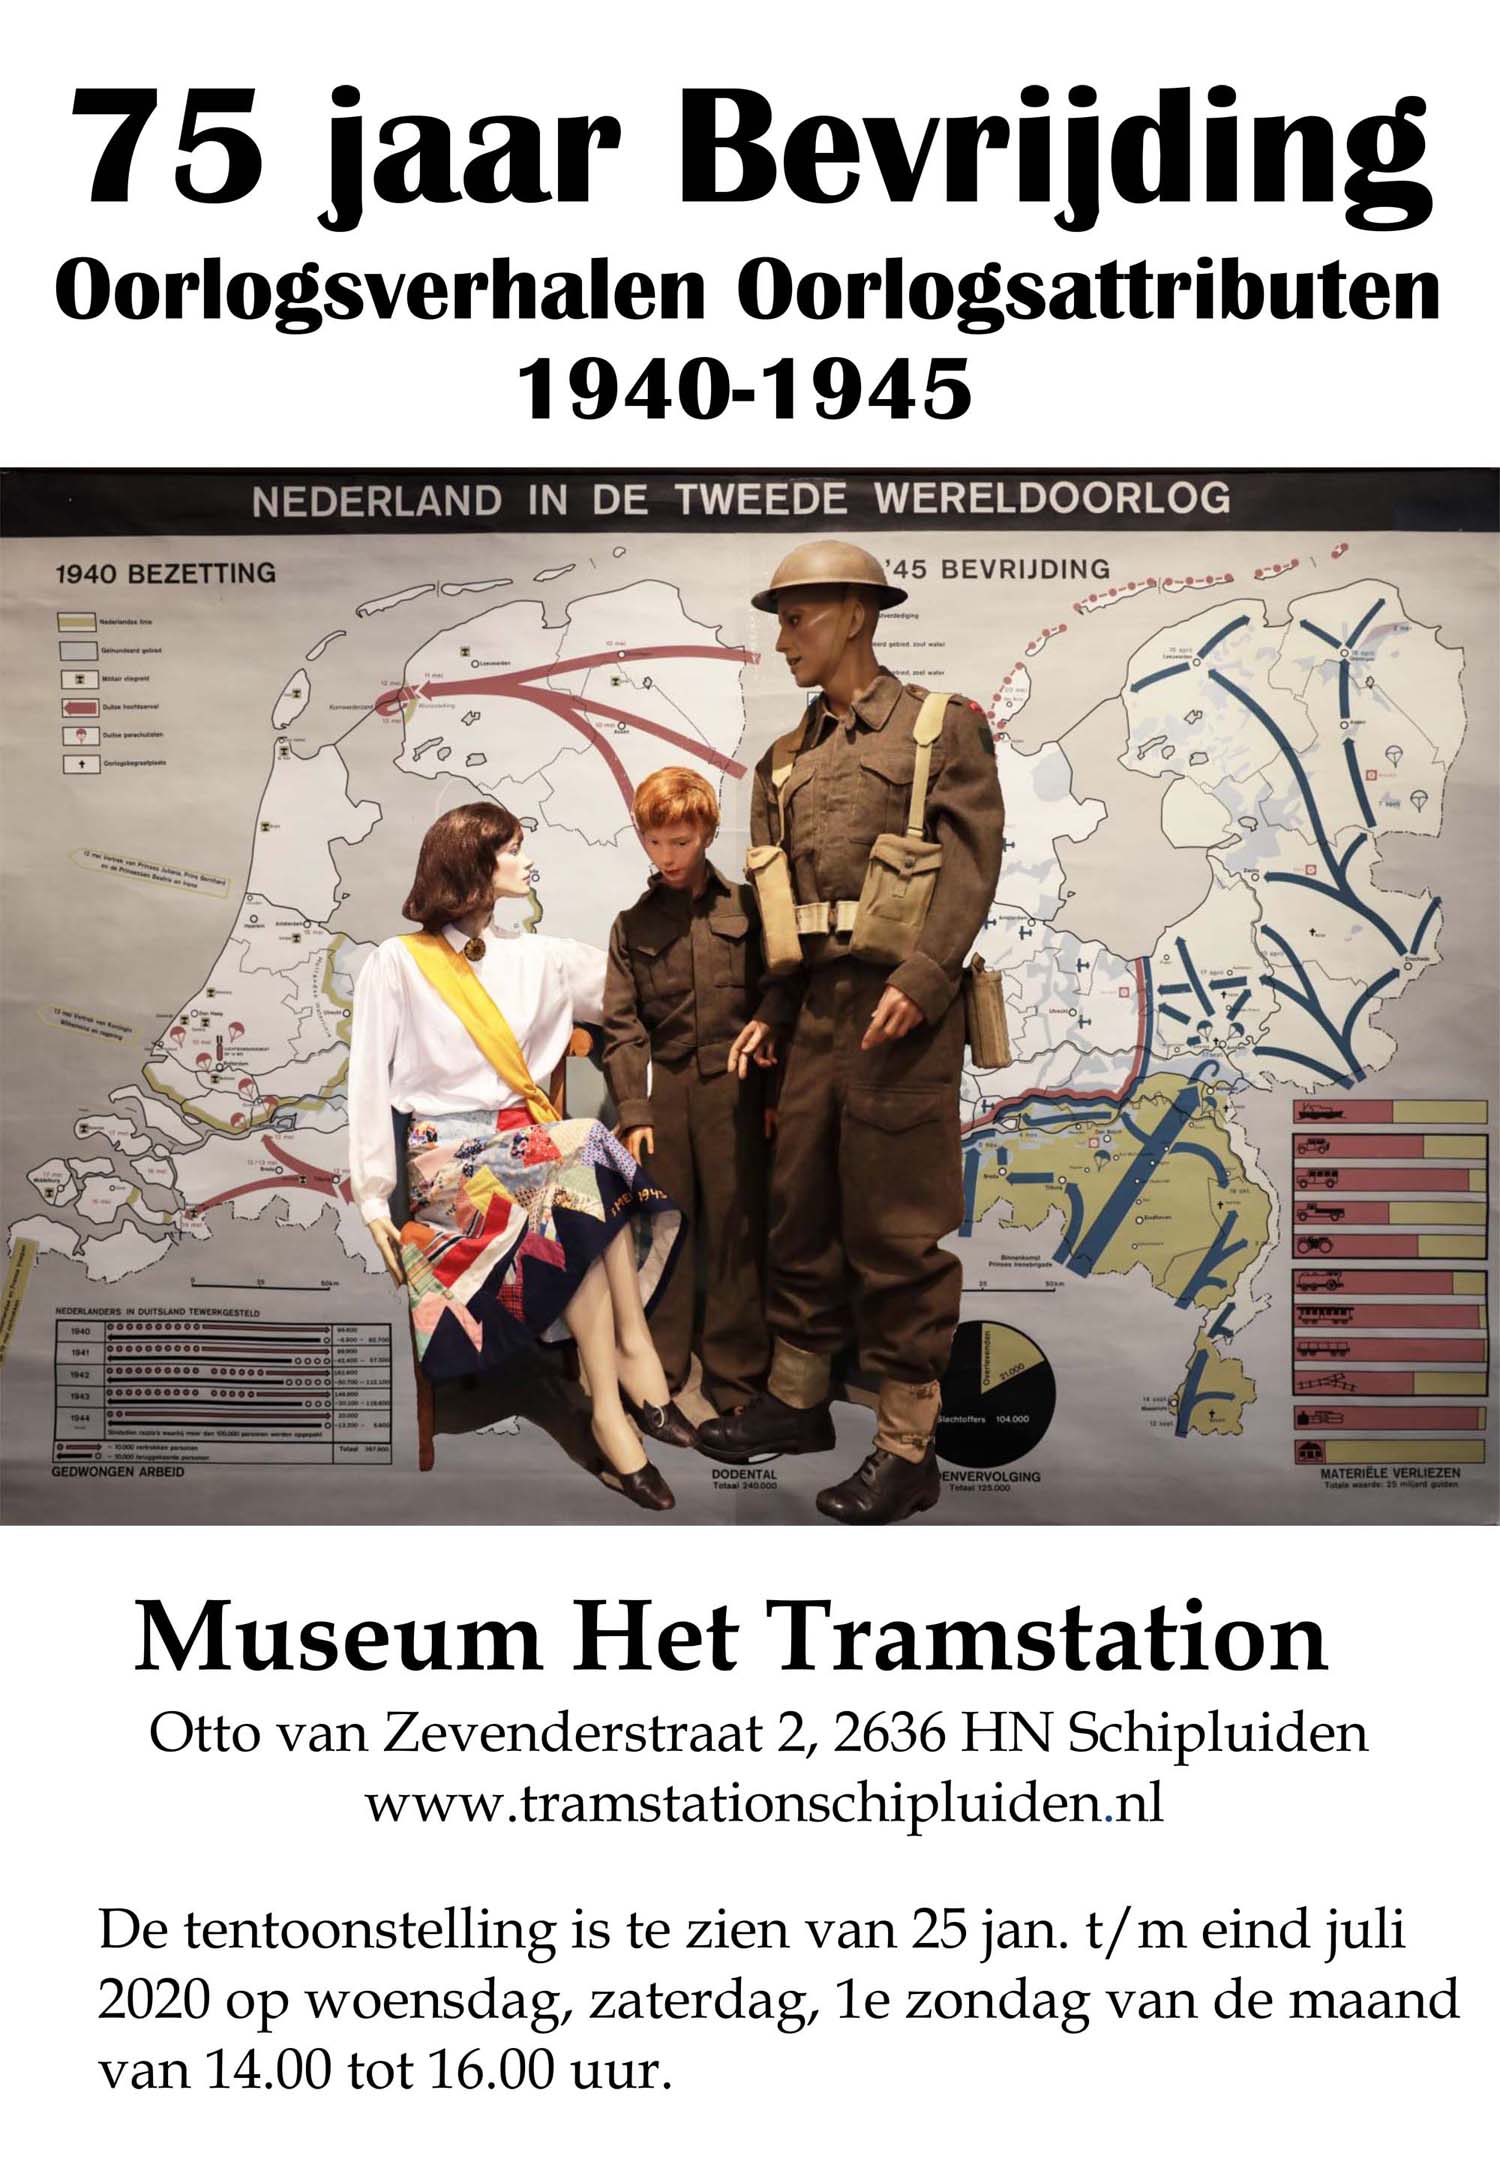 75 jaar Bevrijding Museum Het Tramstation - 24 januari 2020